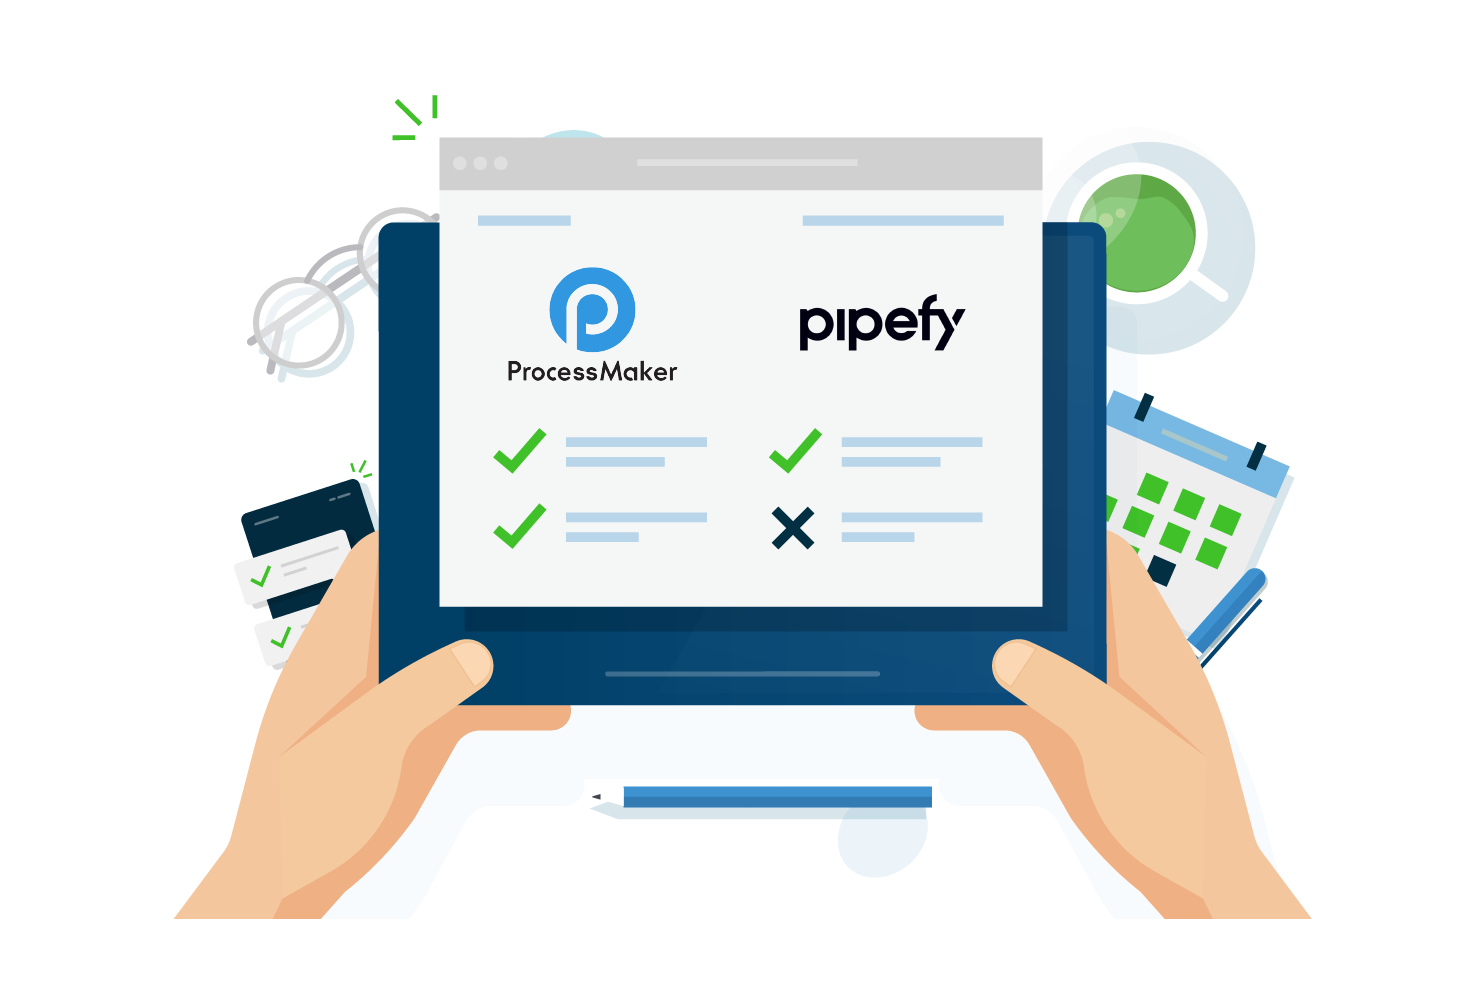 ProcessMaker vs Pipefy